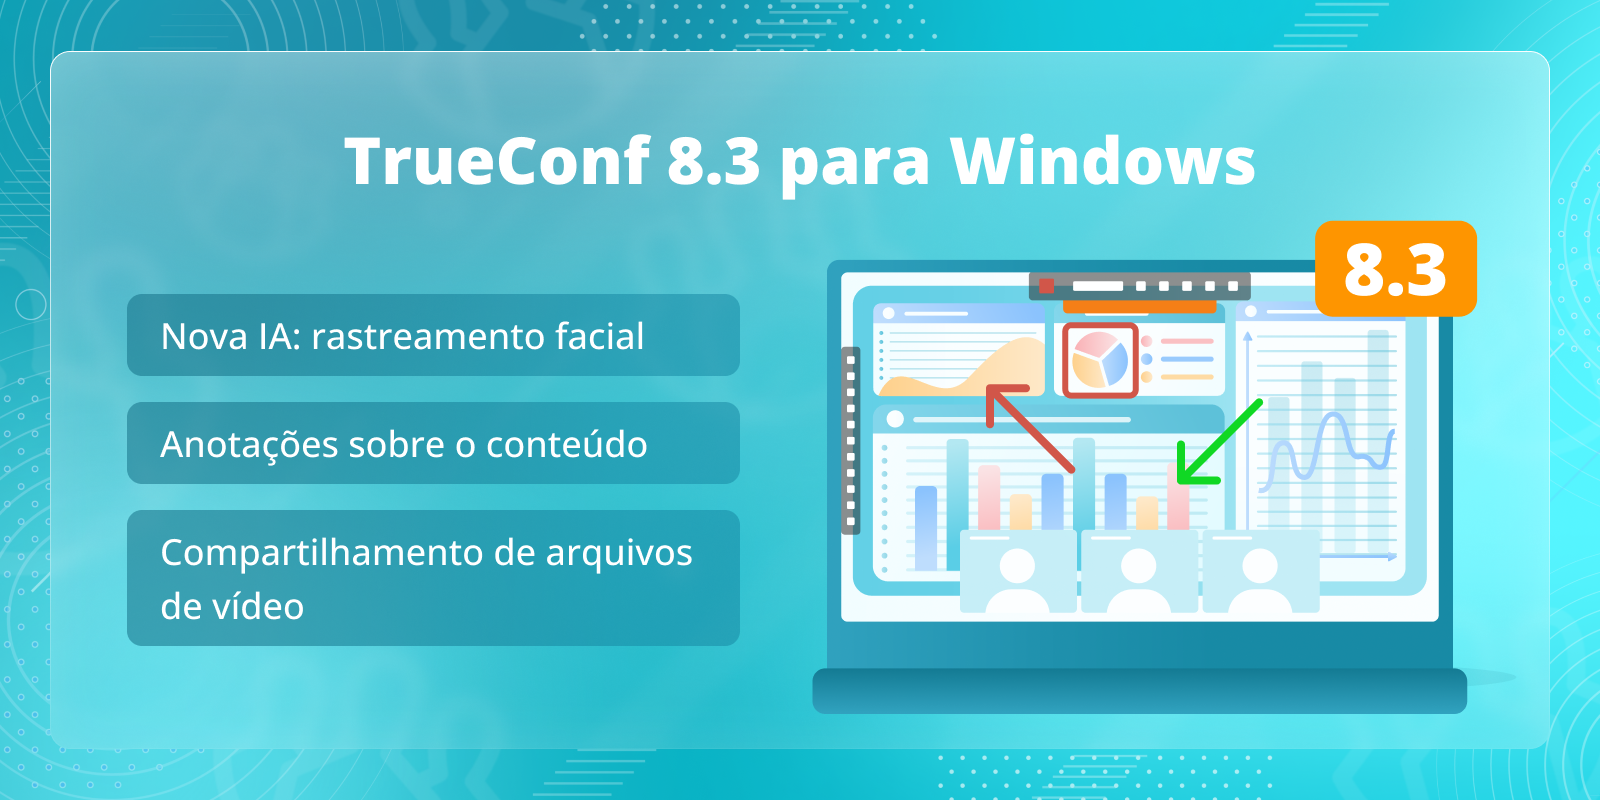 TrueConf 8.3 para Windows: Novo recurso baseado em IA, anotações sobre o conteúdo e compartilhamento de arquivos de vídeo 1